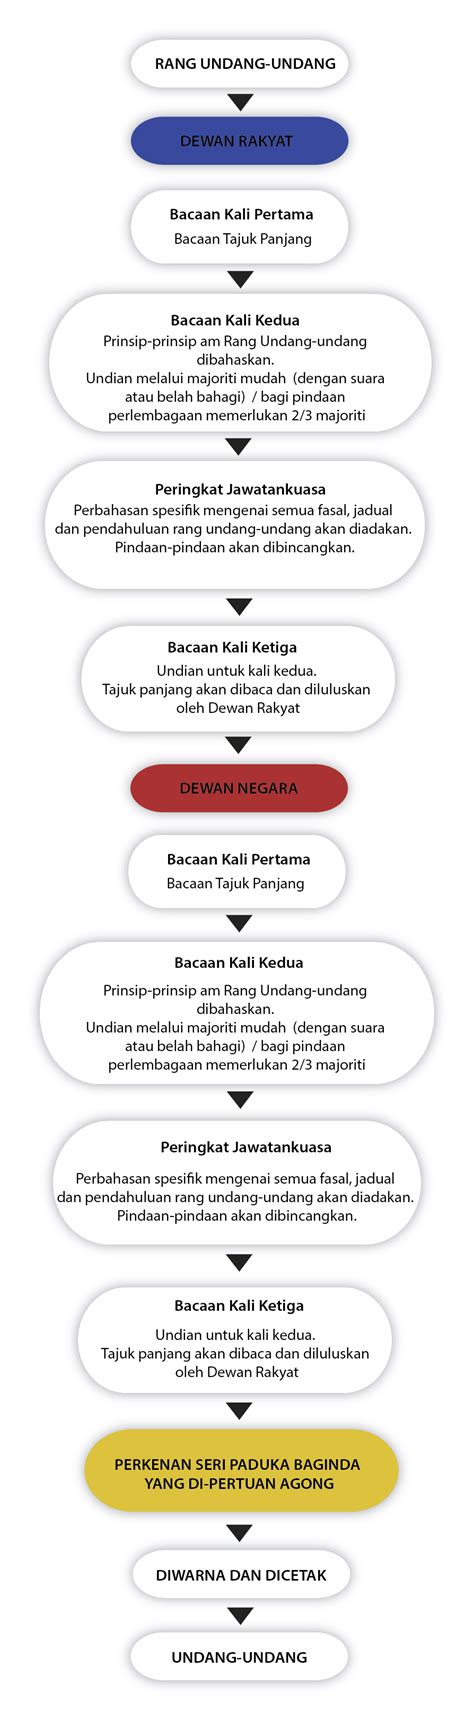 Jadi kali ini kami di siakap keli dengan anda untuk berkongsi. Portal Rasmi Parlimen Malaysia - Soalan Lazim